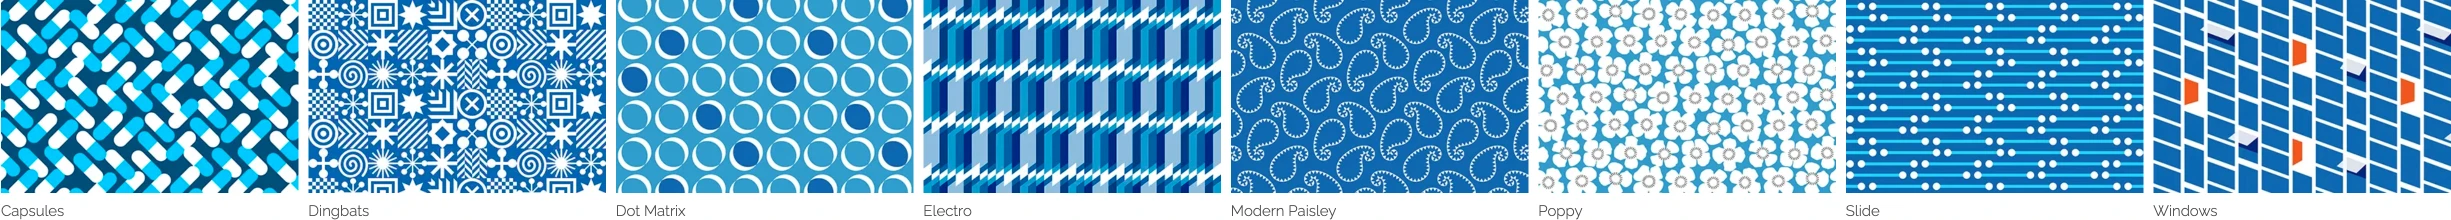 Recent Pattern Designs x90